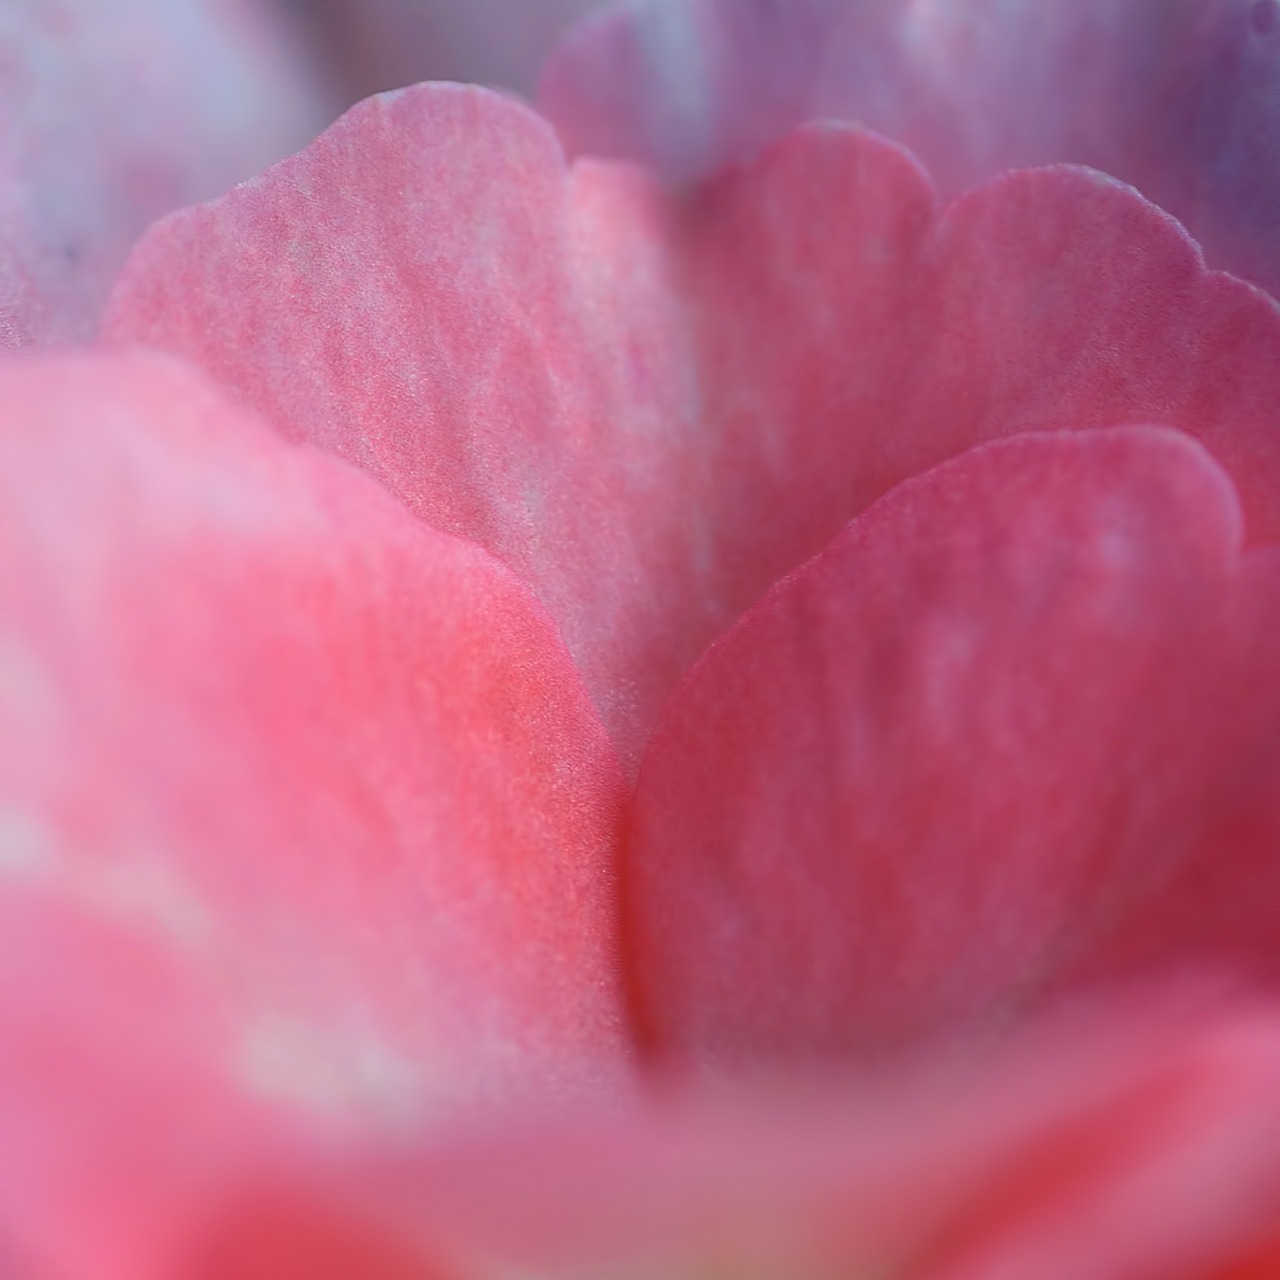 rose petal pink free photo